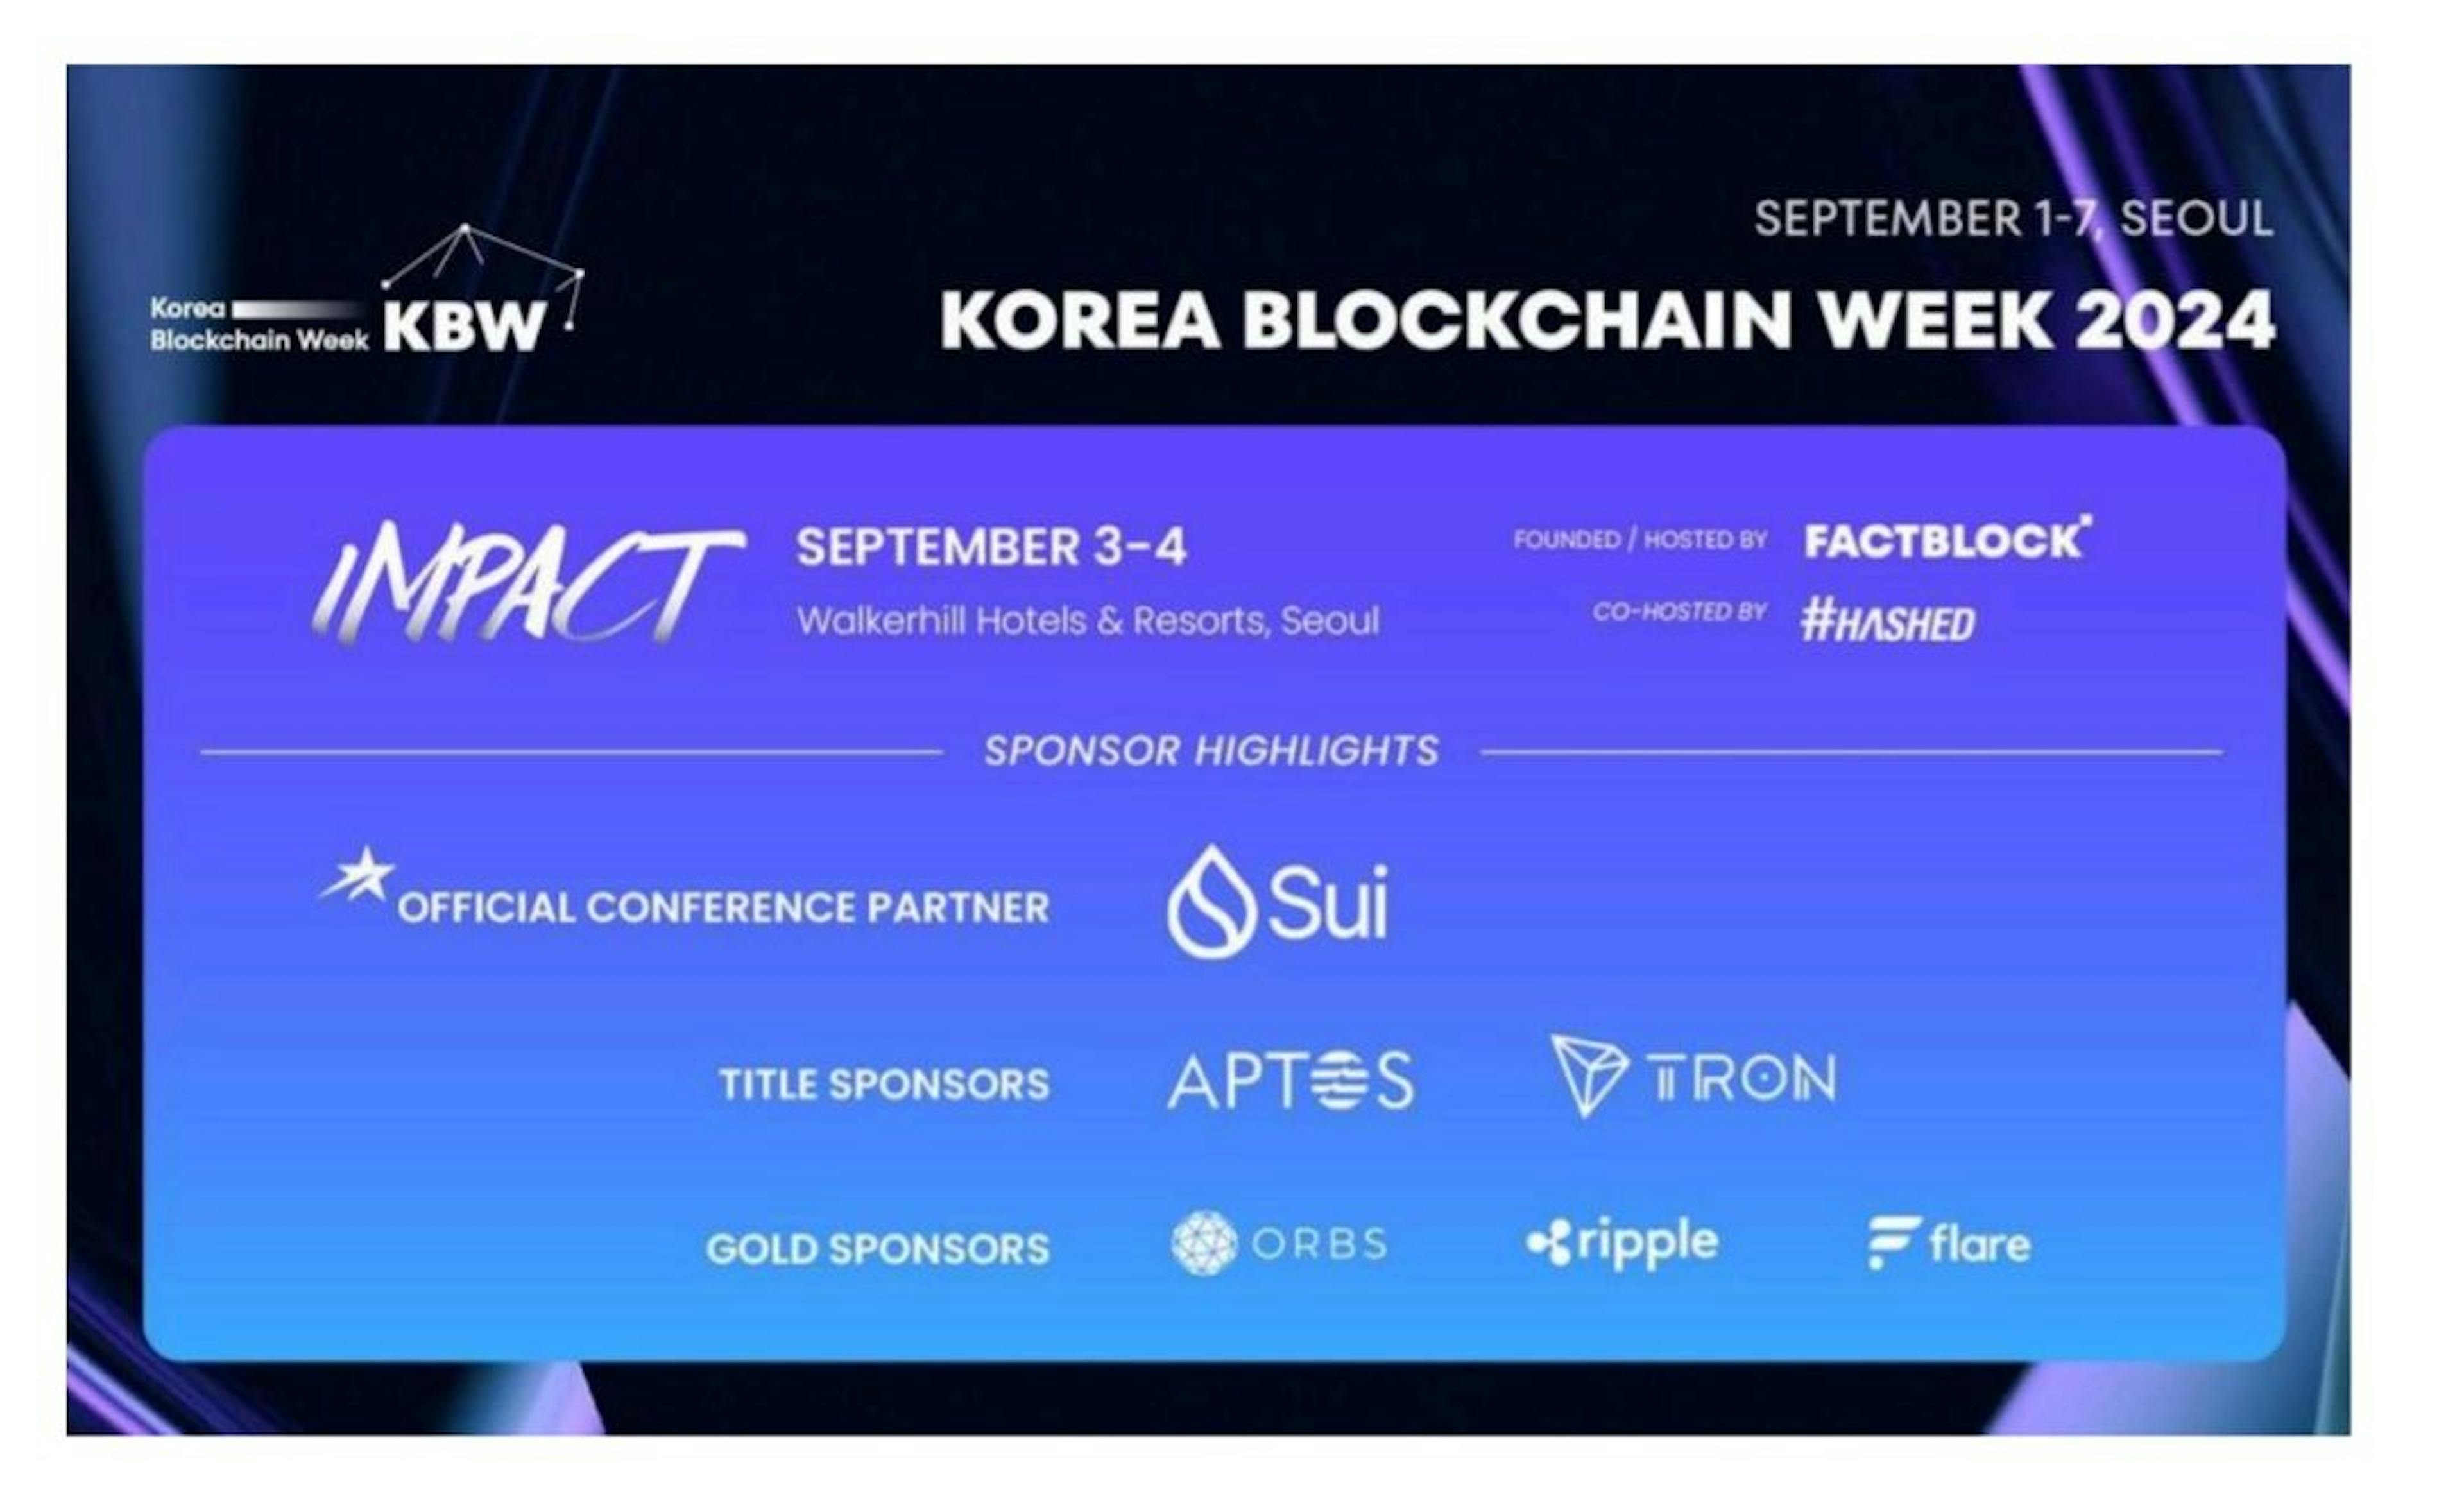 featured image - La Semana Blockchain de Corea nombra a Sui socio oficial de la conferencia y anuncia nuevos oradores principales